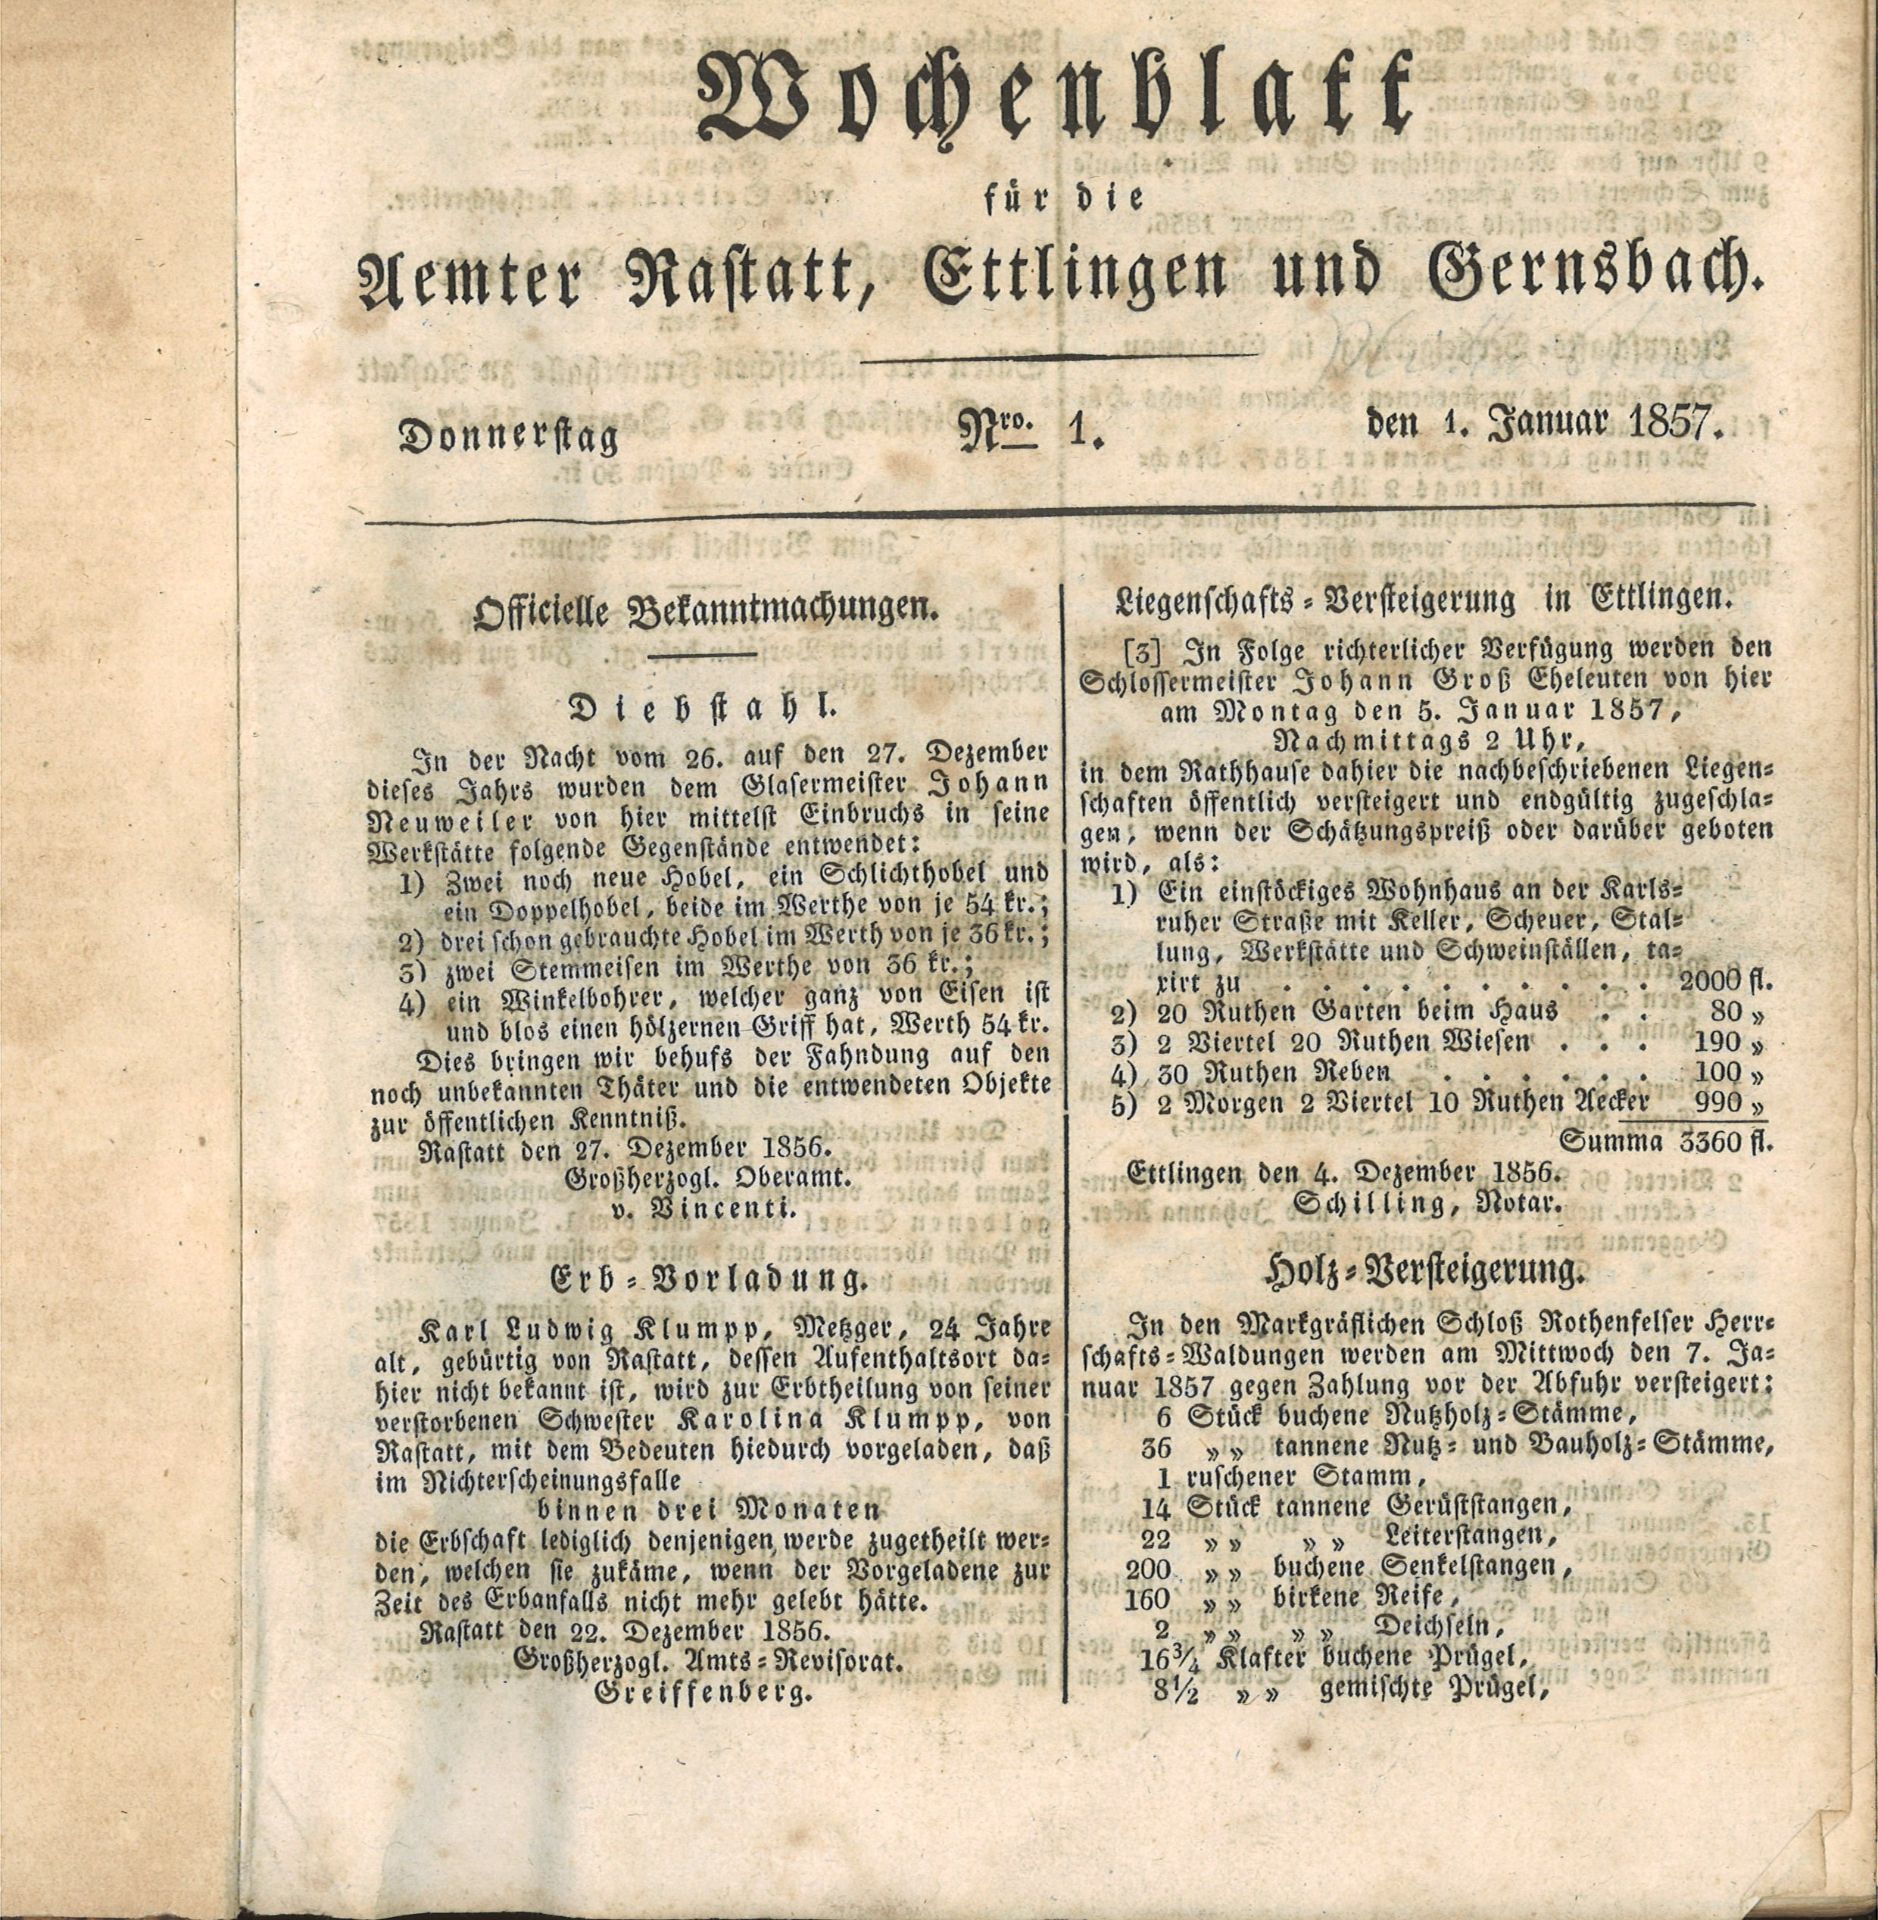 Wochenblatt für die Ämter Rastatt, Ettlingen und Gernsbach, Jahrgang 1857, Hefte Nr. 1-157. Alle 157